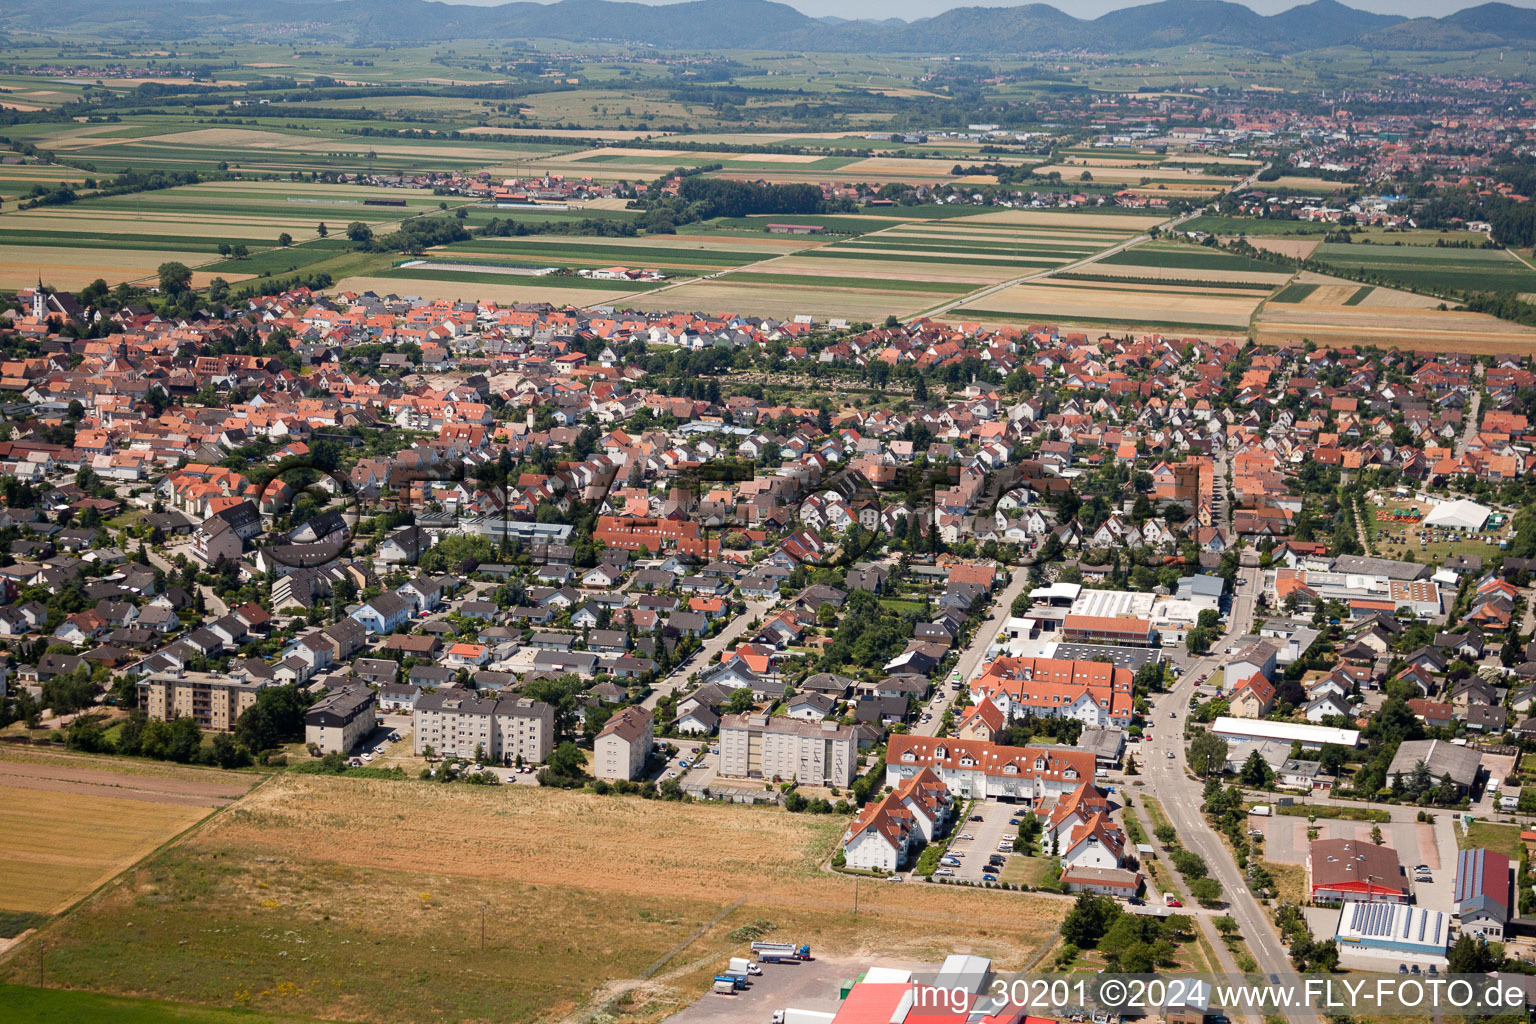 Offenbach an der Queich dans le département Rhénanie-Palatinat, Allemagne du point de vue du drone